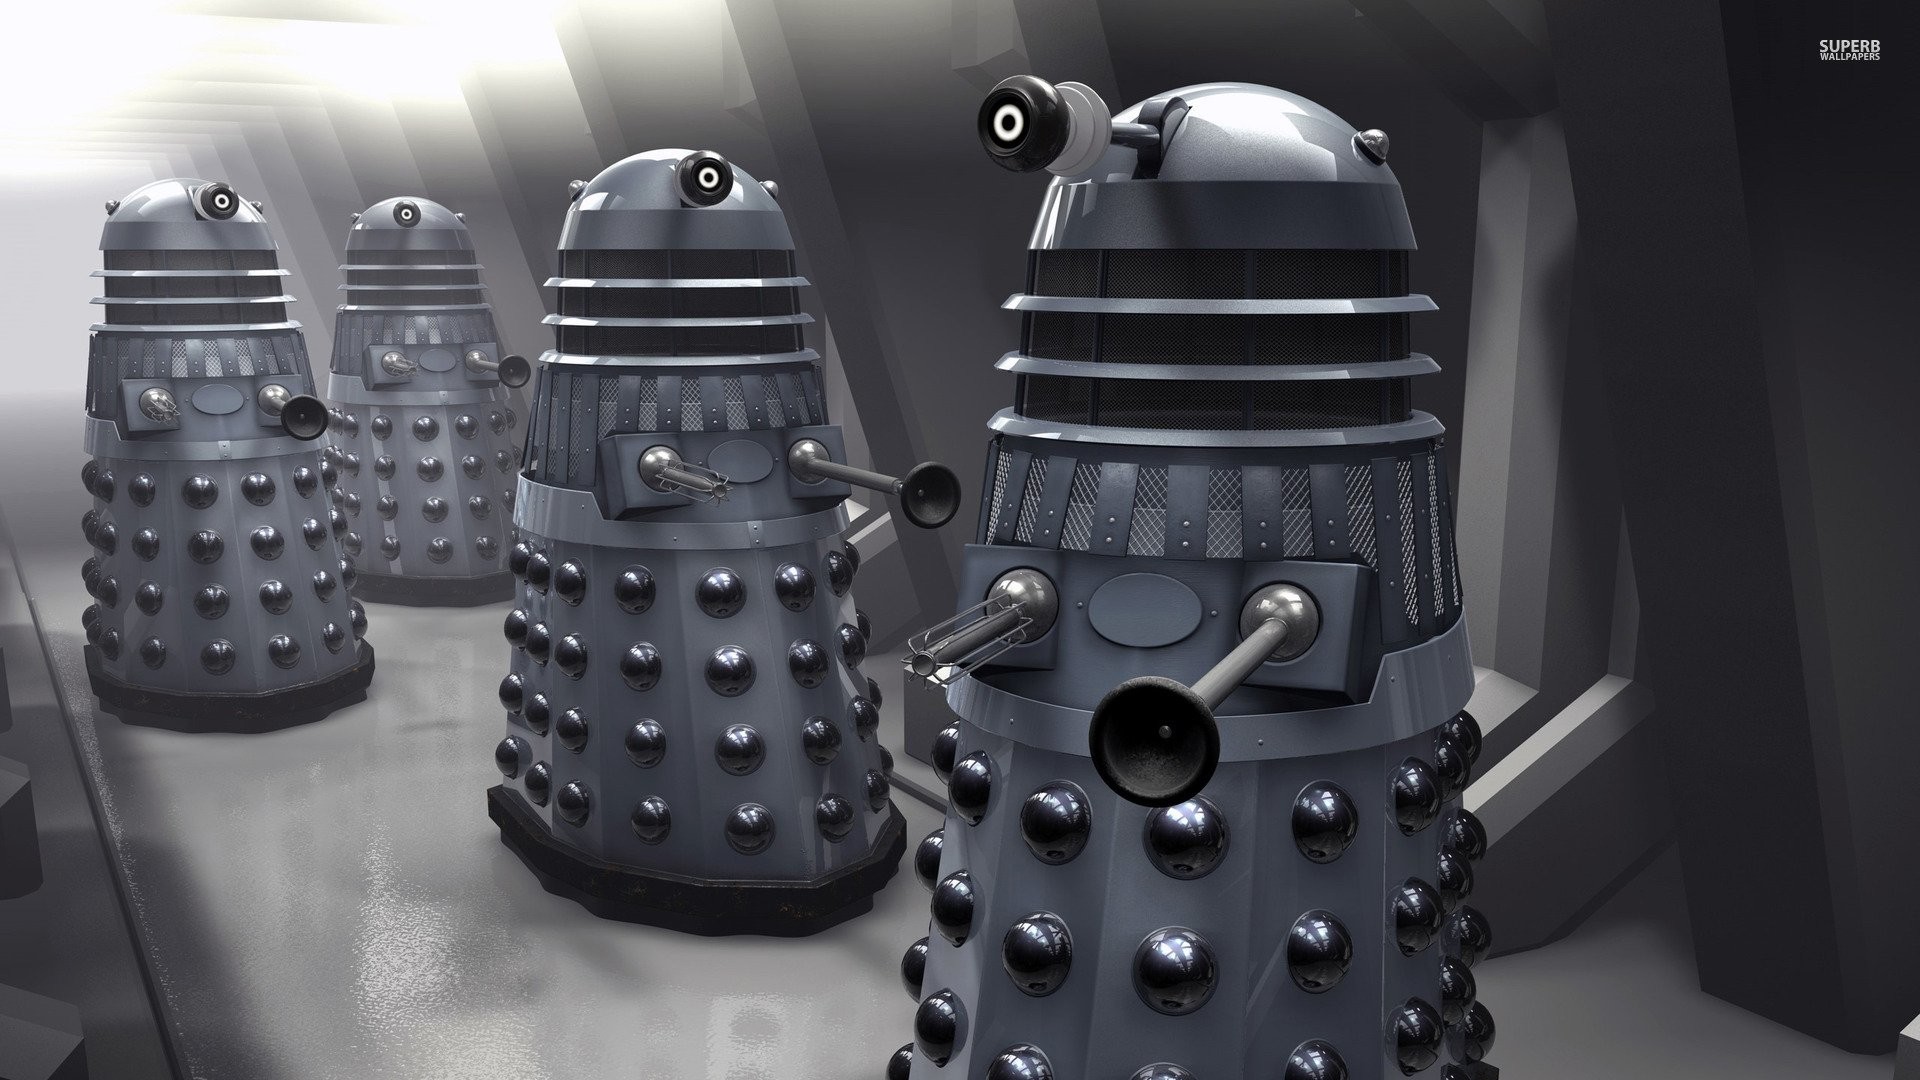 1920x1080 Dalek - Doctor Who 505253